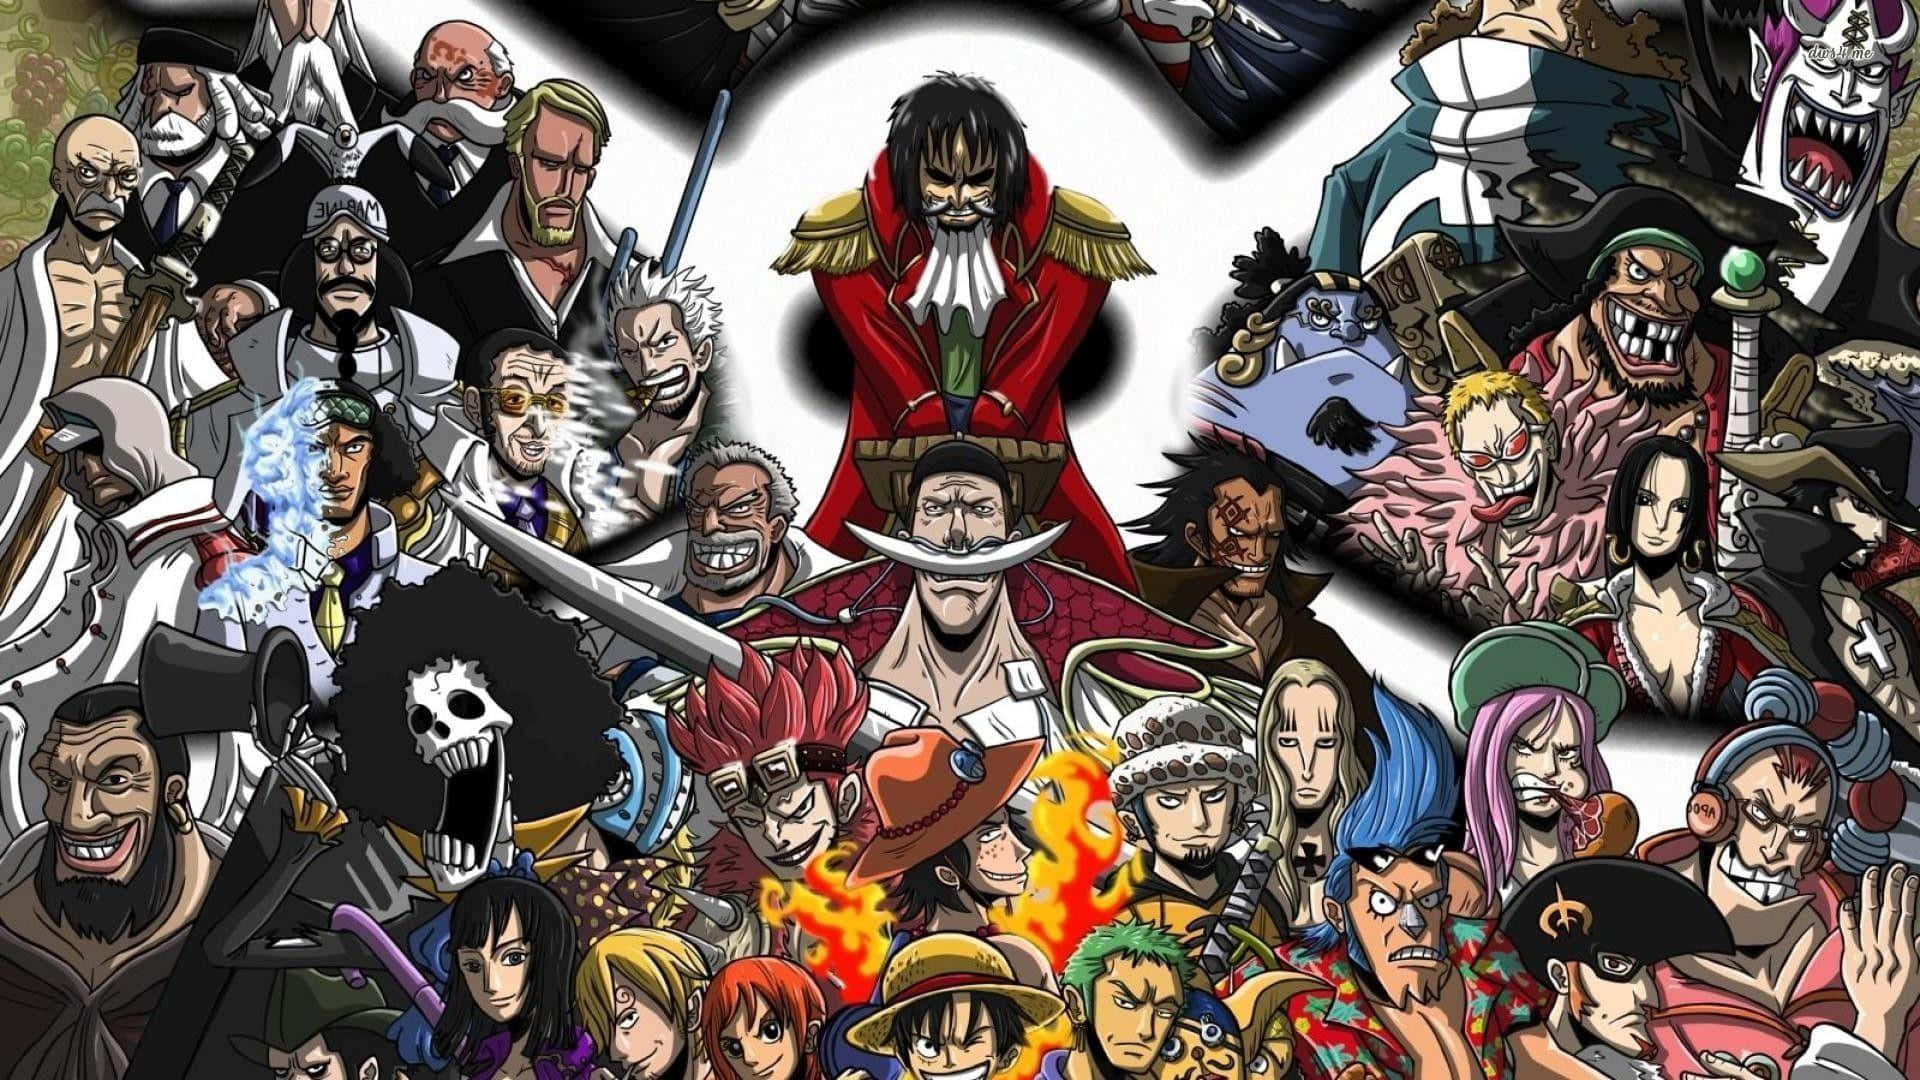 Bildder Whitebeard-piraten Von One Piece